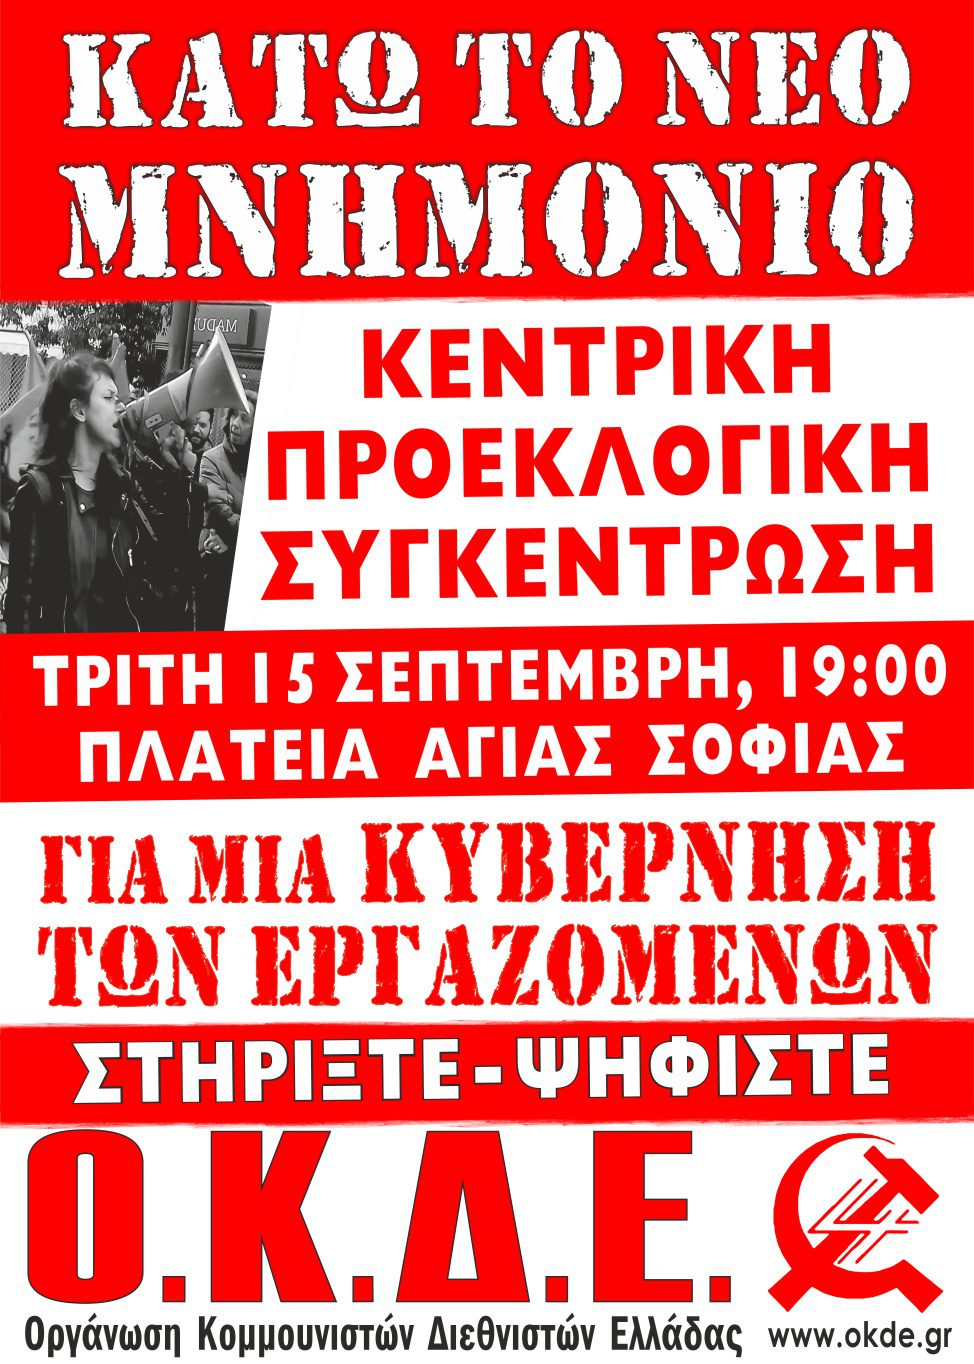 Τρίτη 15/9 στις 19:00, κεντρική προεκλογική συγκέντρωση της ΟΚΔΕ στην Θεσσαλονίκη